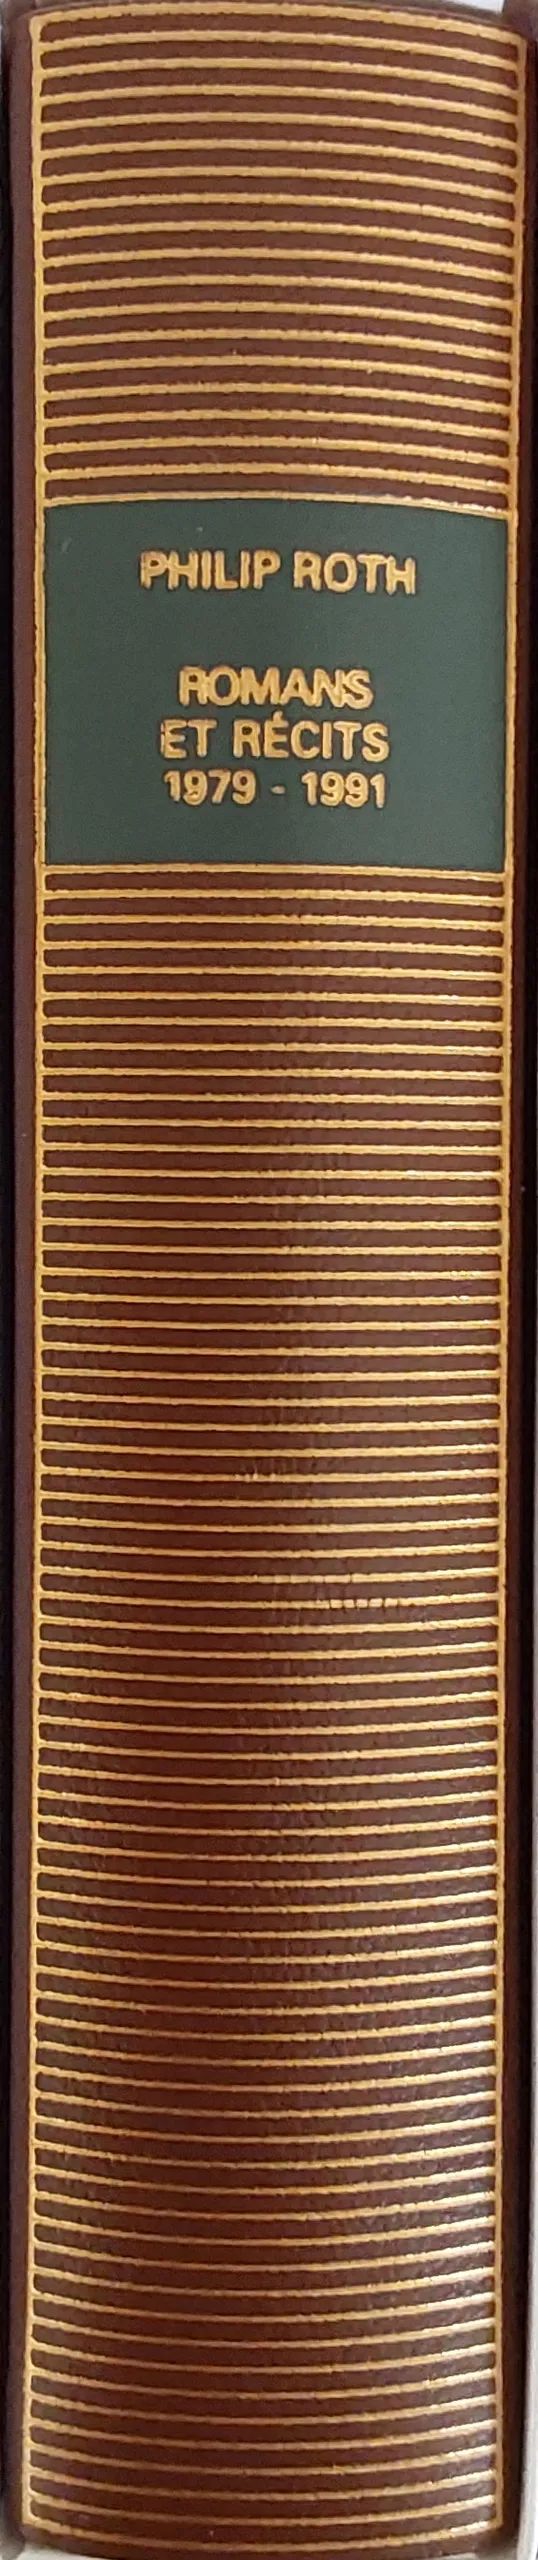 Volume 663 de Philip Roth dans la Bibliothèque de la Pléiade.